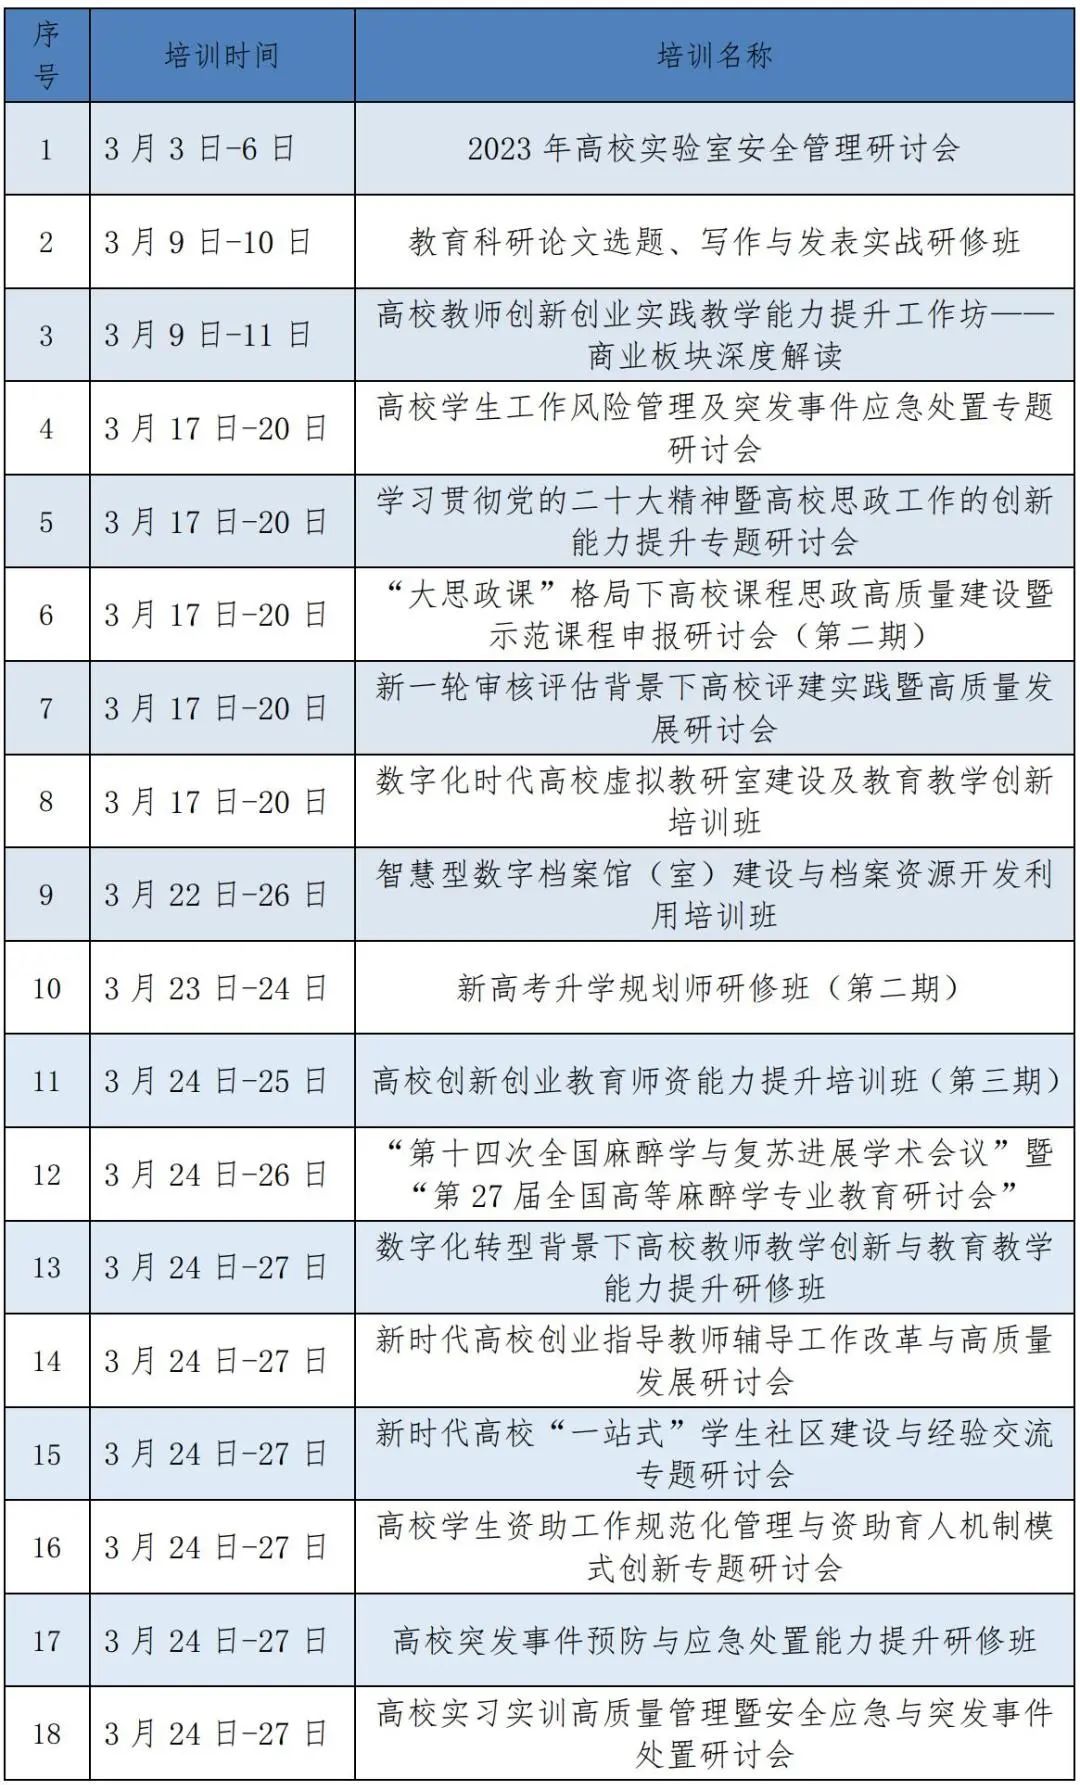 中国高等教育培训中心2023年3月培训项目集锦_页面_02_图像_0001.jpg